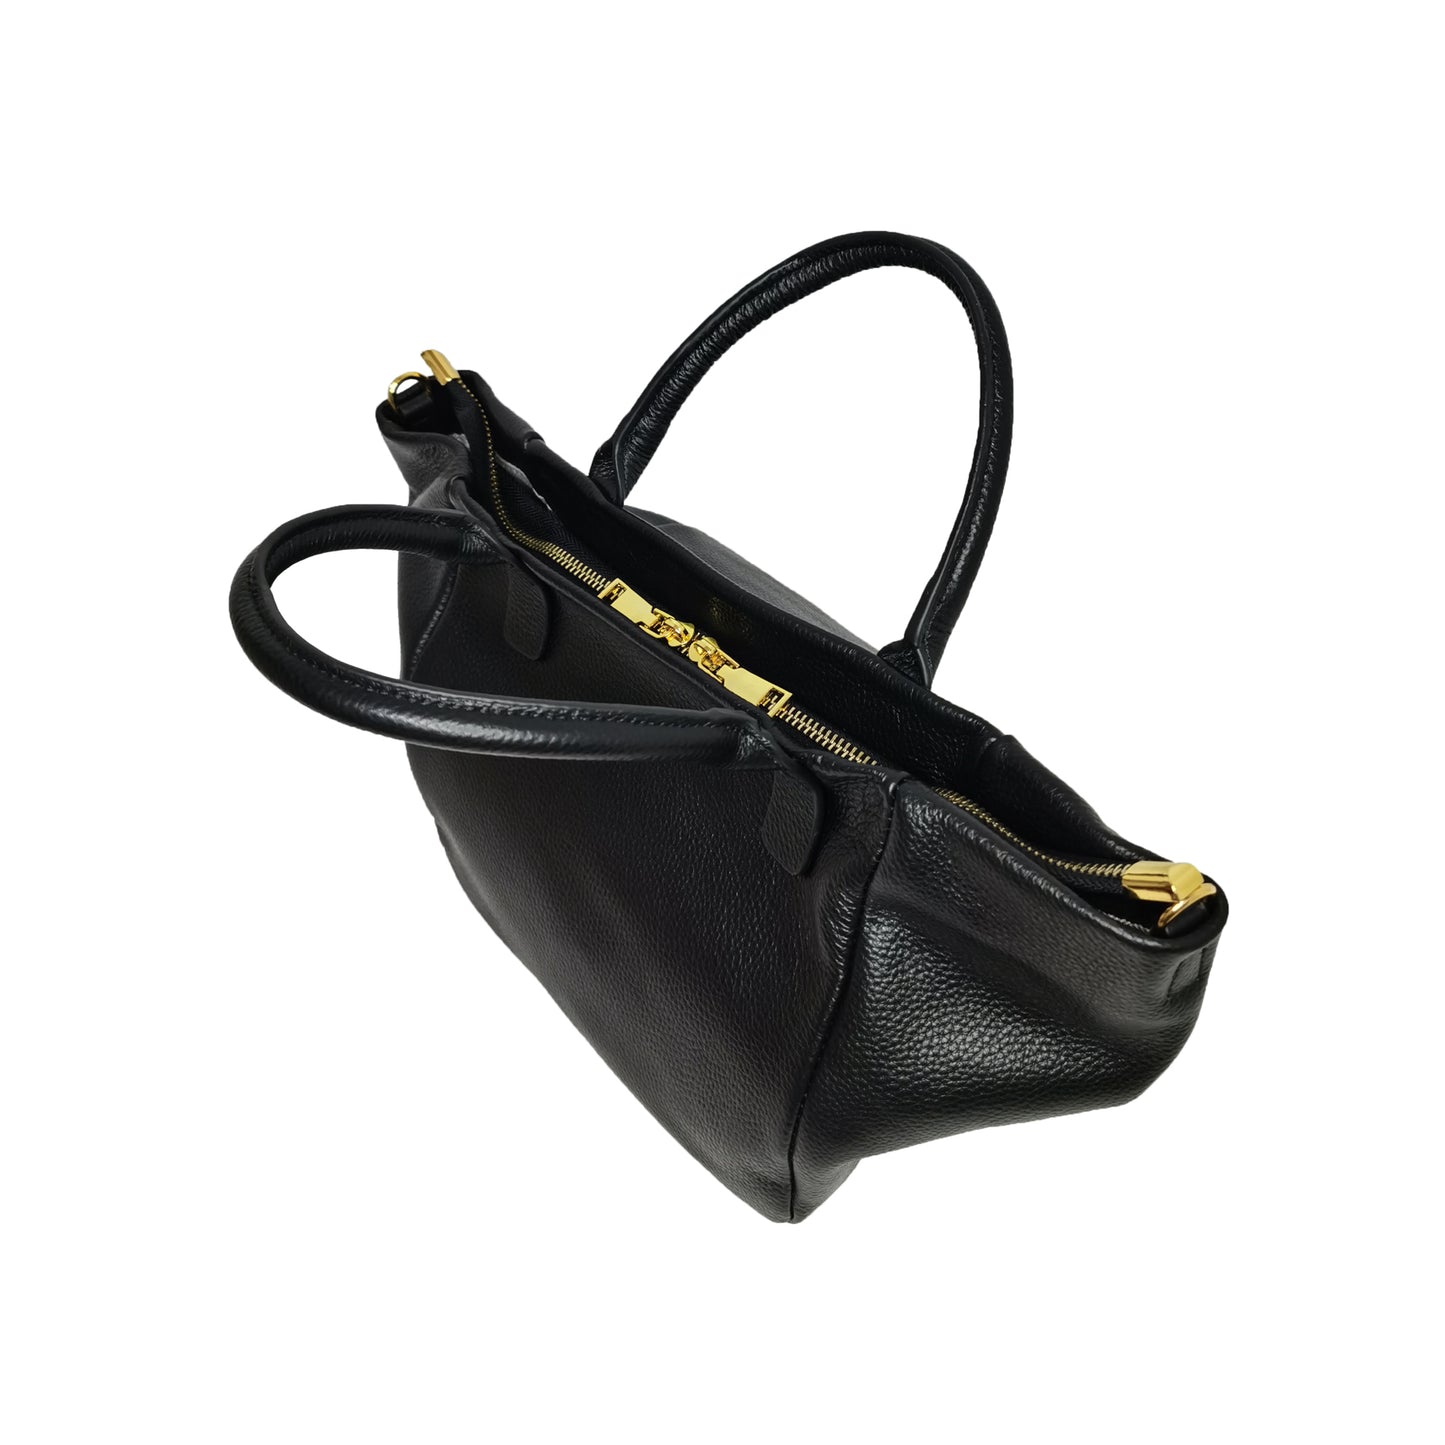 Women's genuine cowhide leather handbag Nodel v2 design